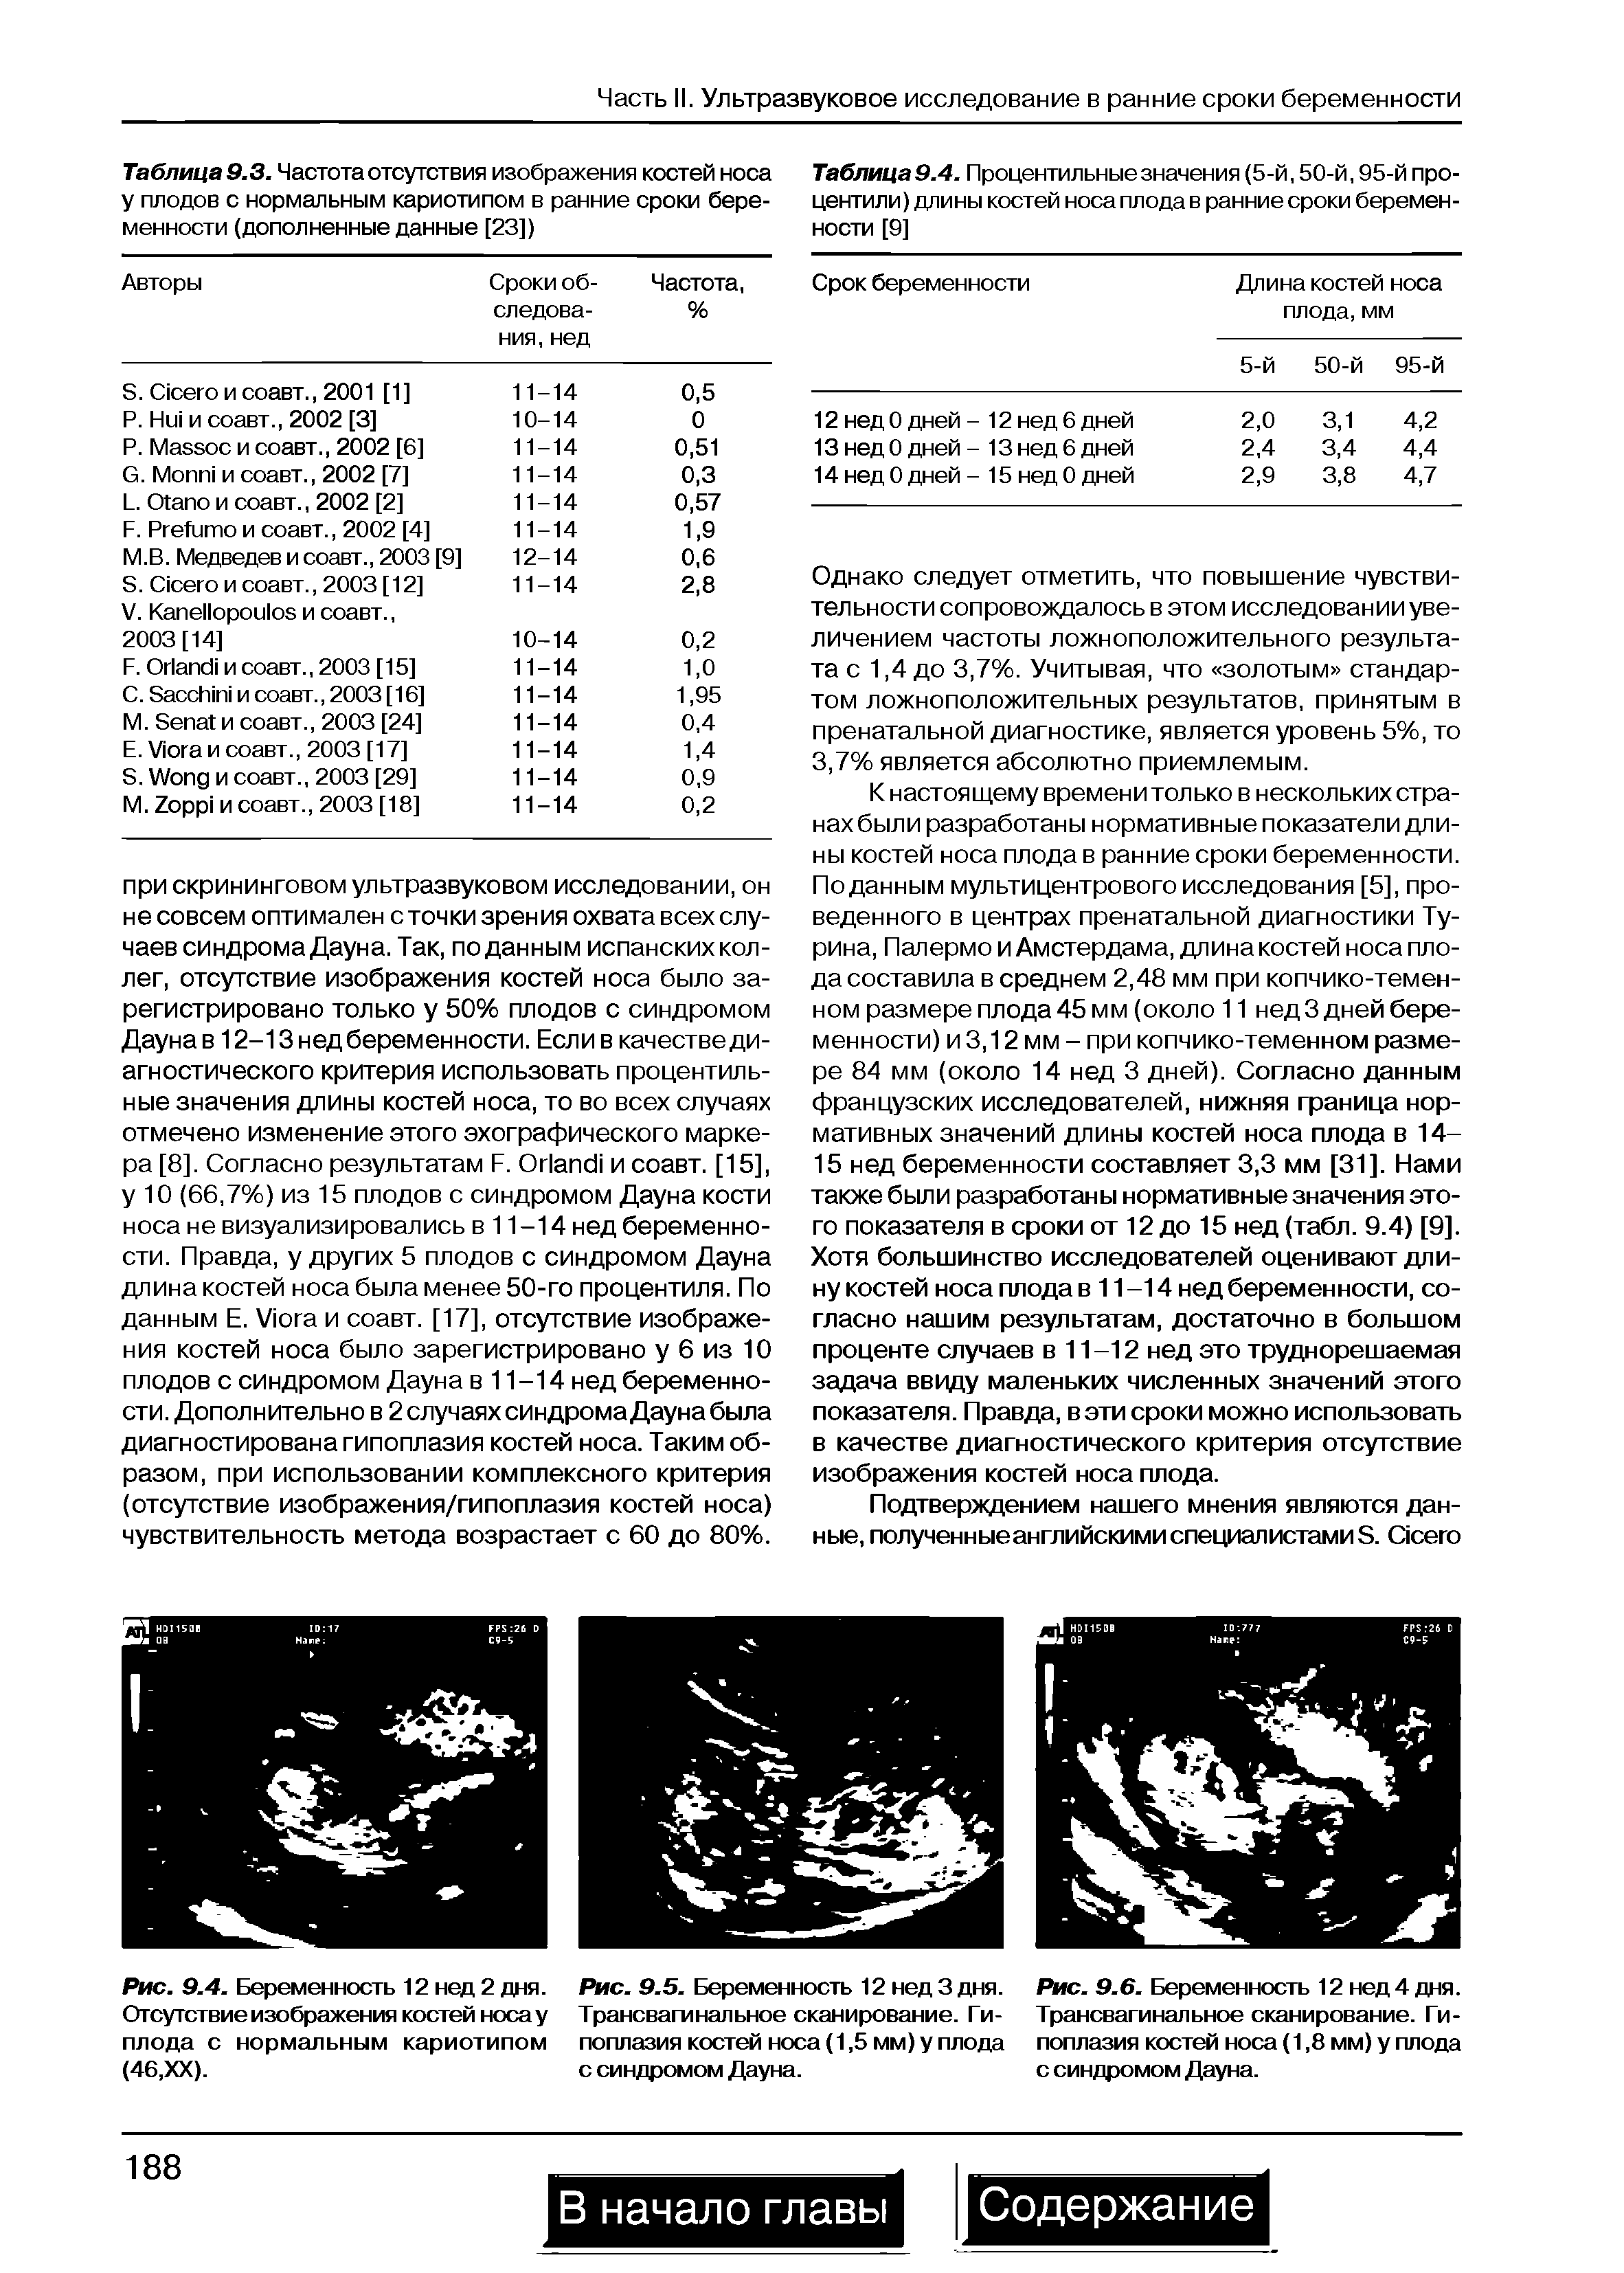 Рис. 9.5. Беременность 12 нед 3 дня. Трансвагинальное сканирование. Гипоплазия костей носа (1,5 мм) у плода с синдромом Дауна.